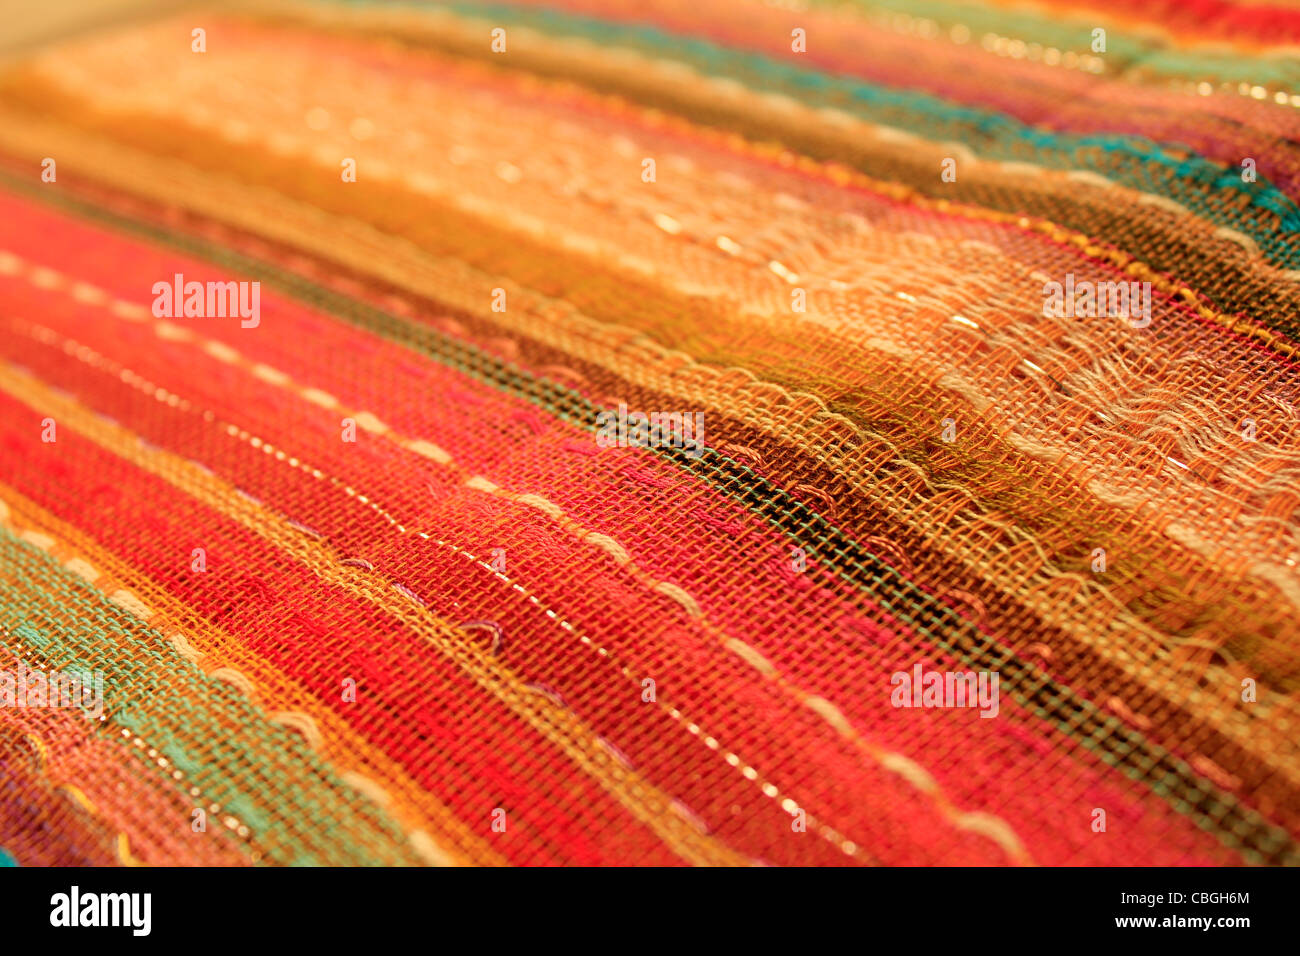 Indian fabric close-up Stock Photo